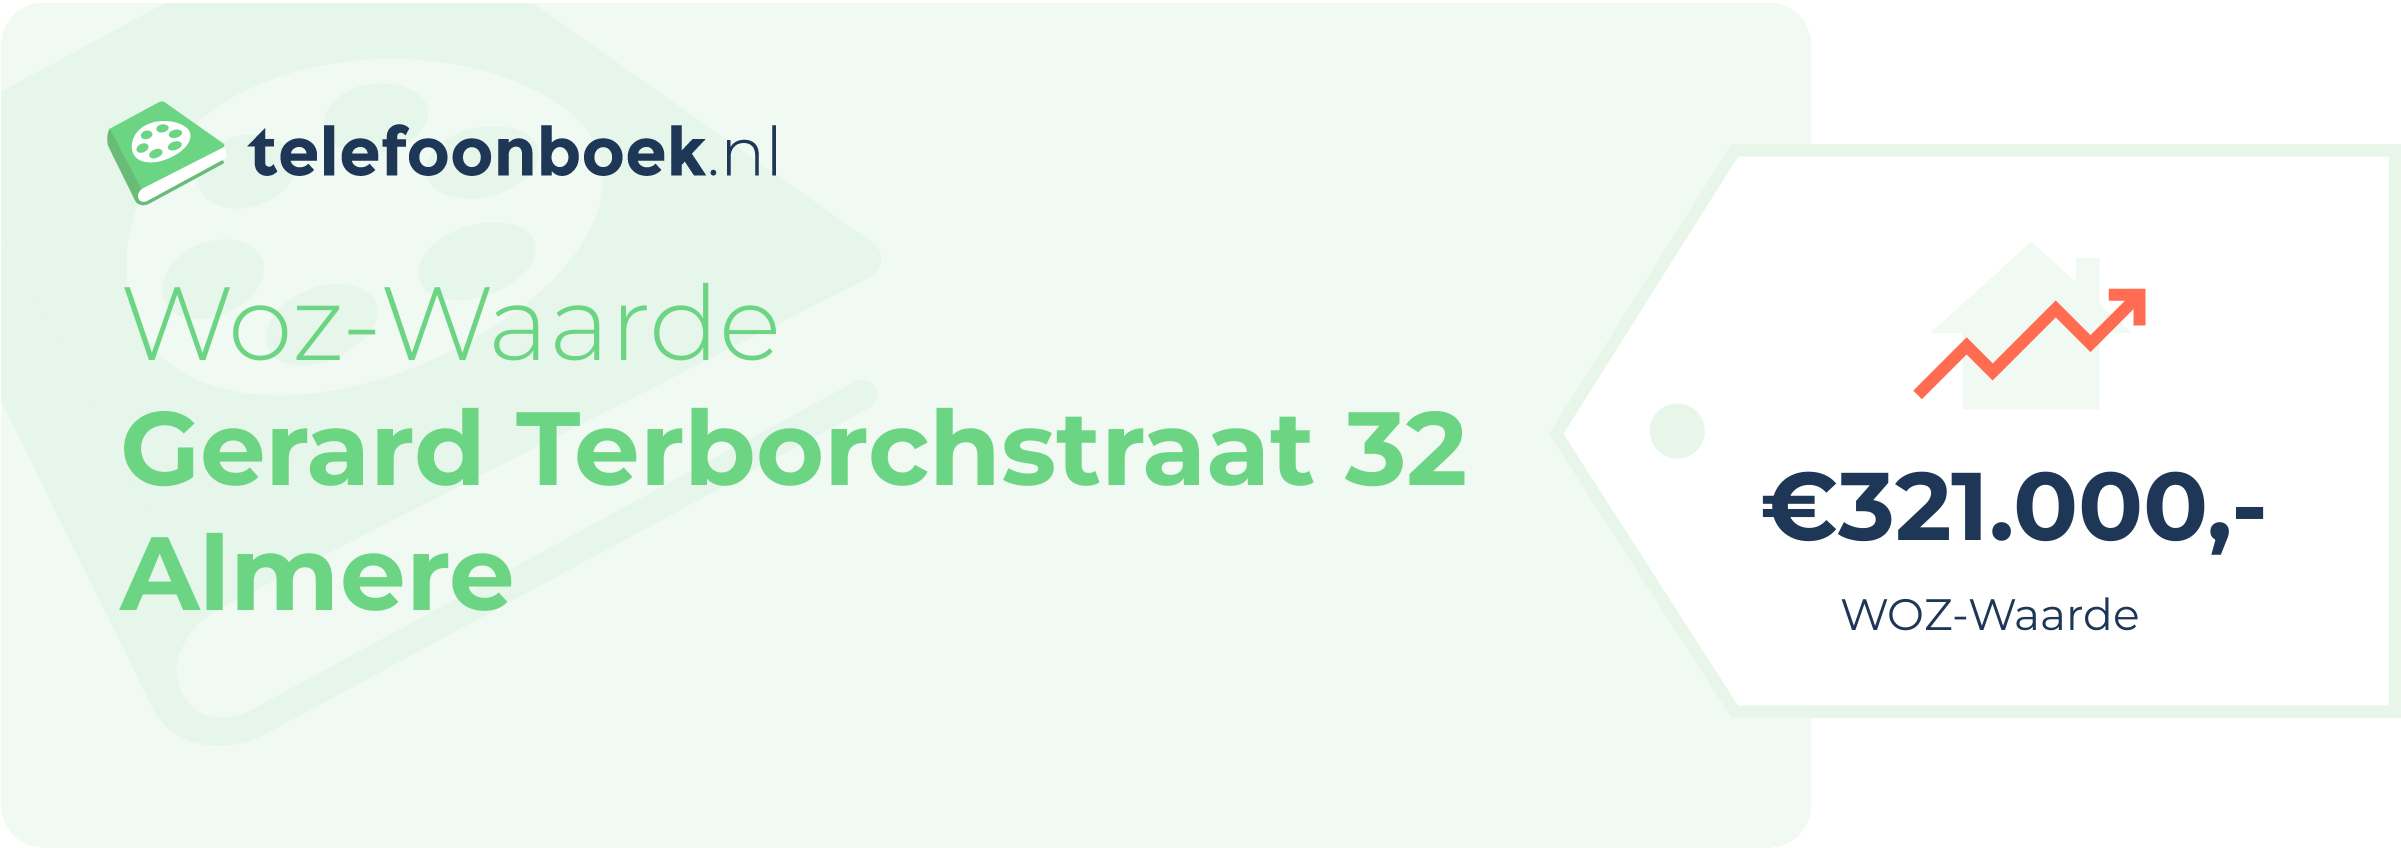 WOZ-waarde Gerard Terborchstraat 32 Almere